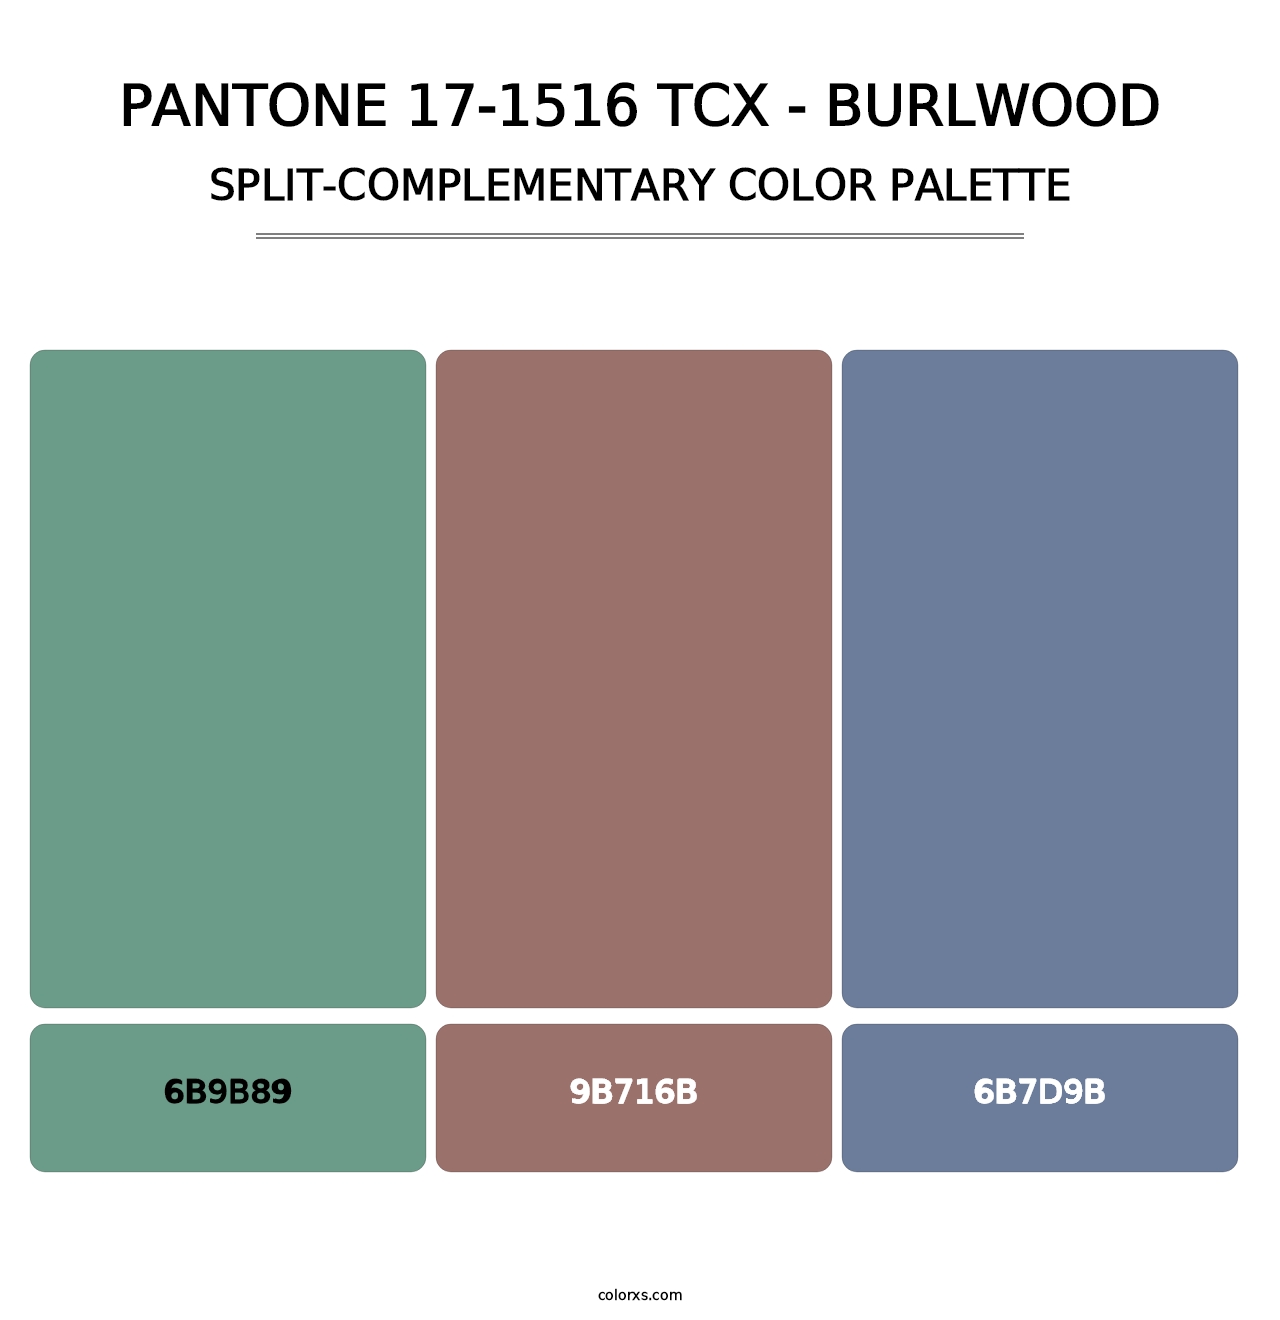 PANTONE 17-1516 TCX - Burlwood - Split-Complementary Color Palette